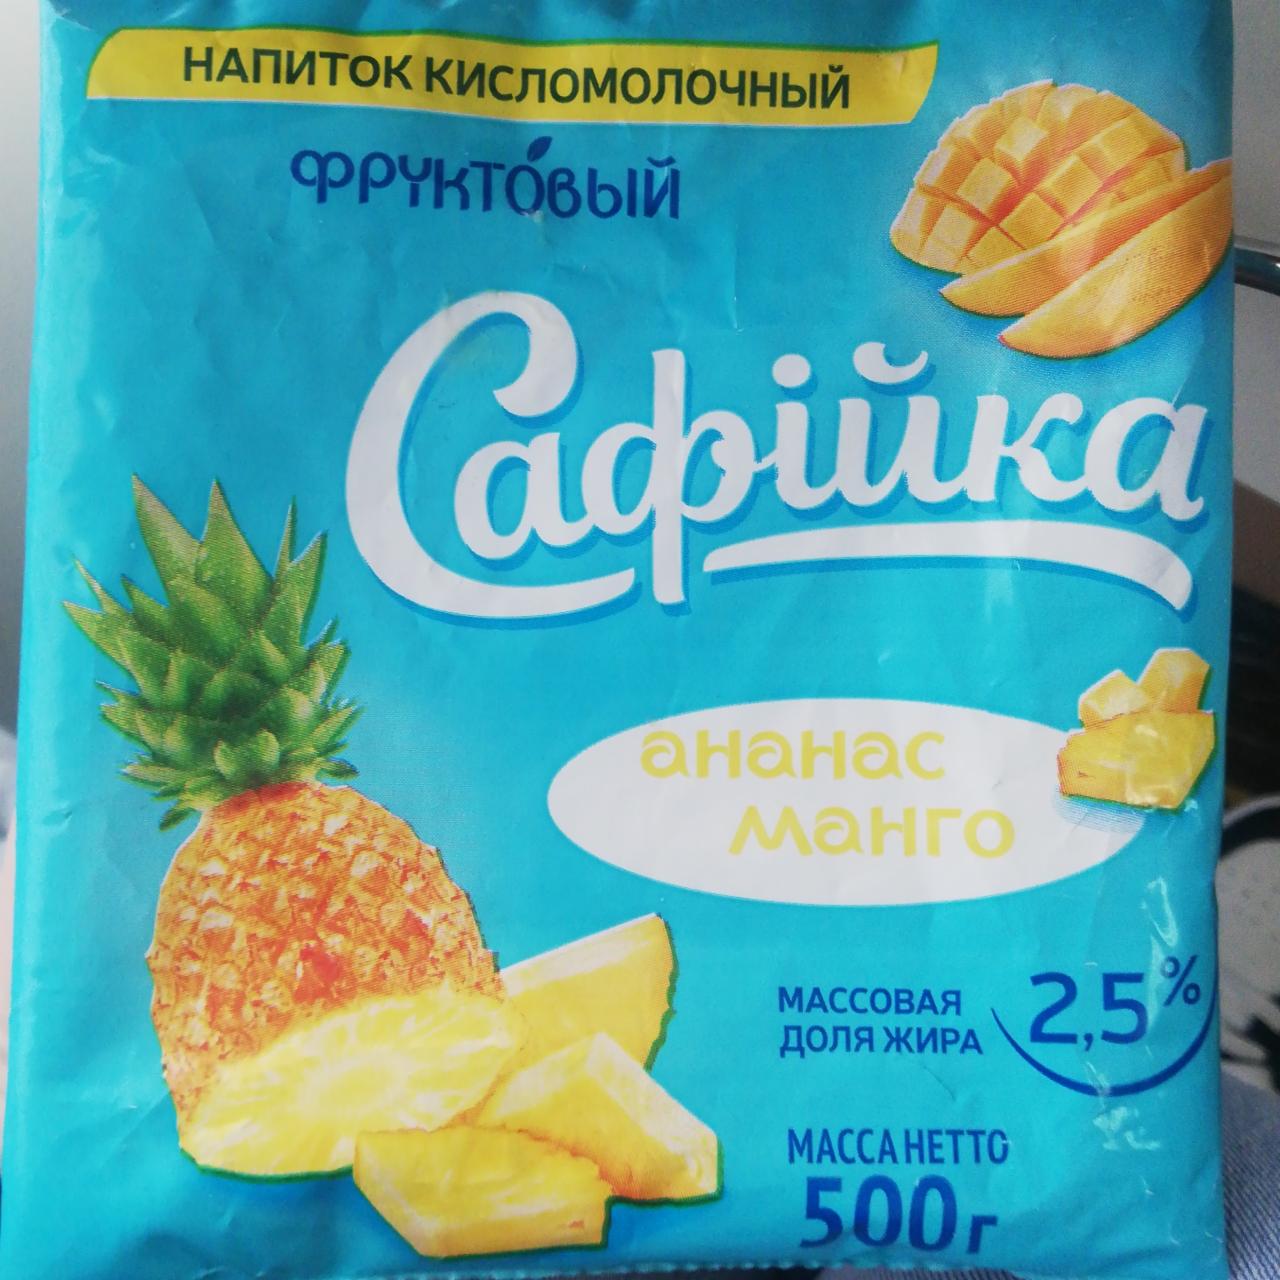 Фото - Напиток кисло молочный фруктовый ананас-манго 2.5 % Сафийка